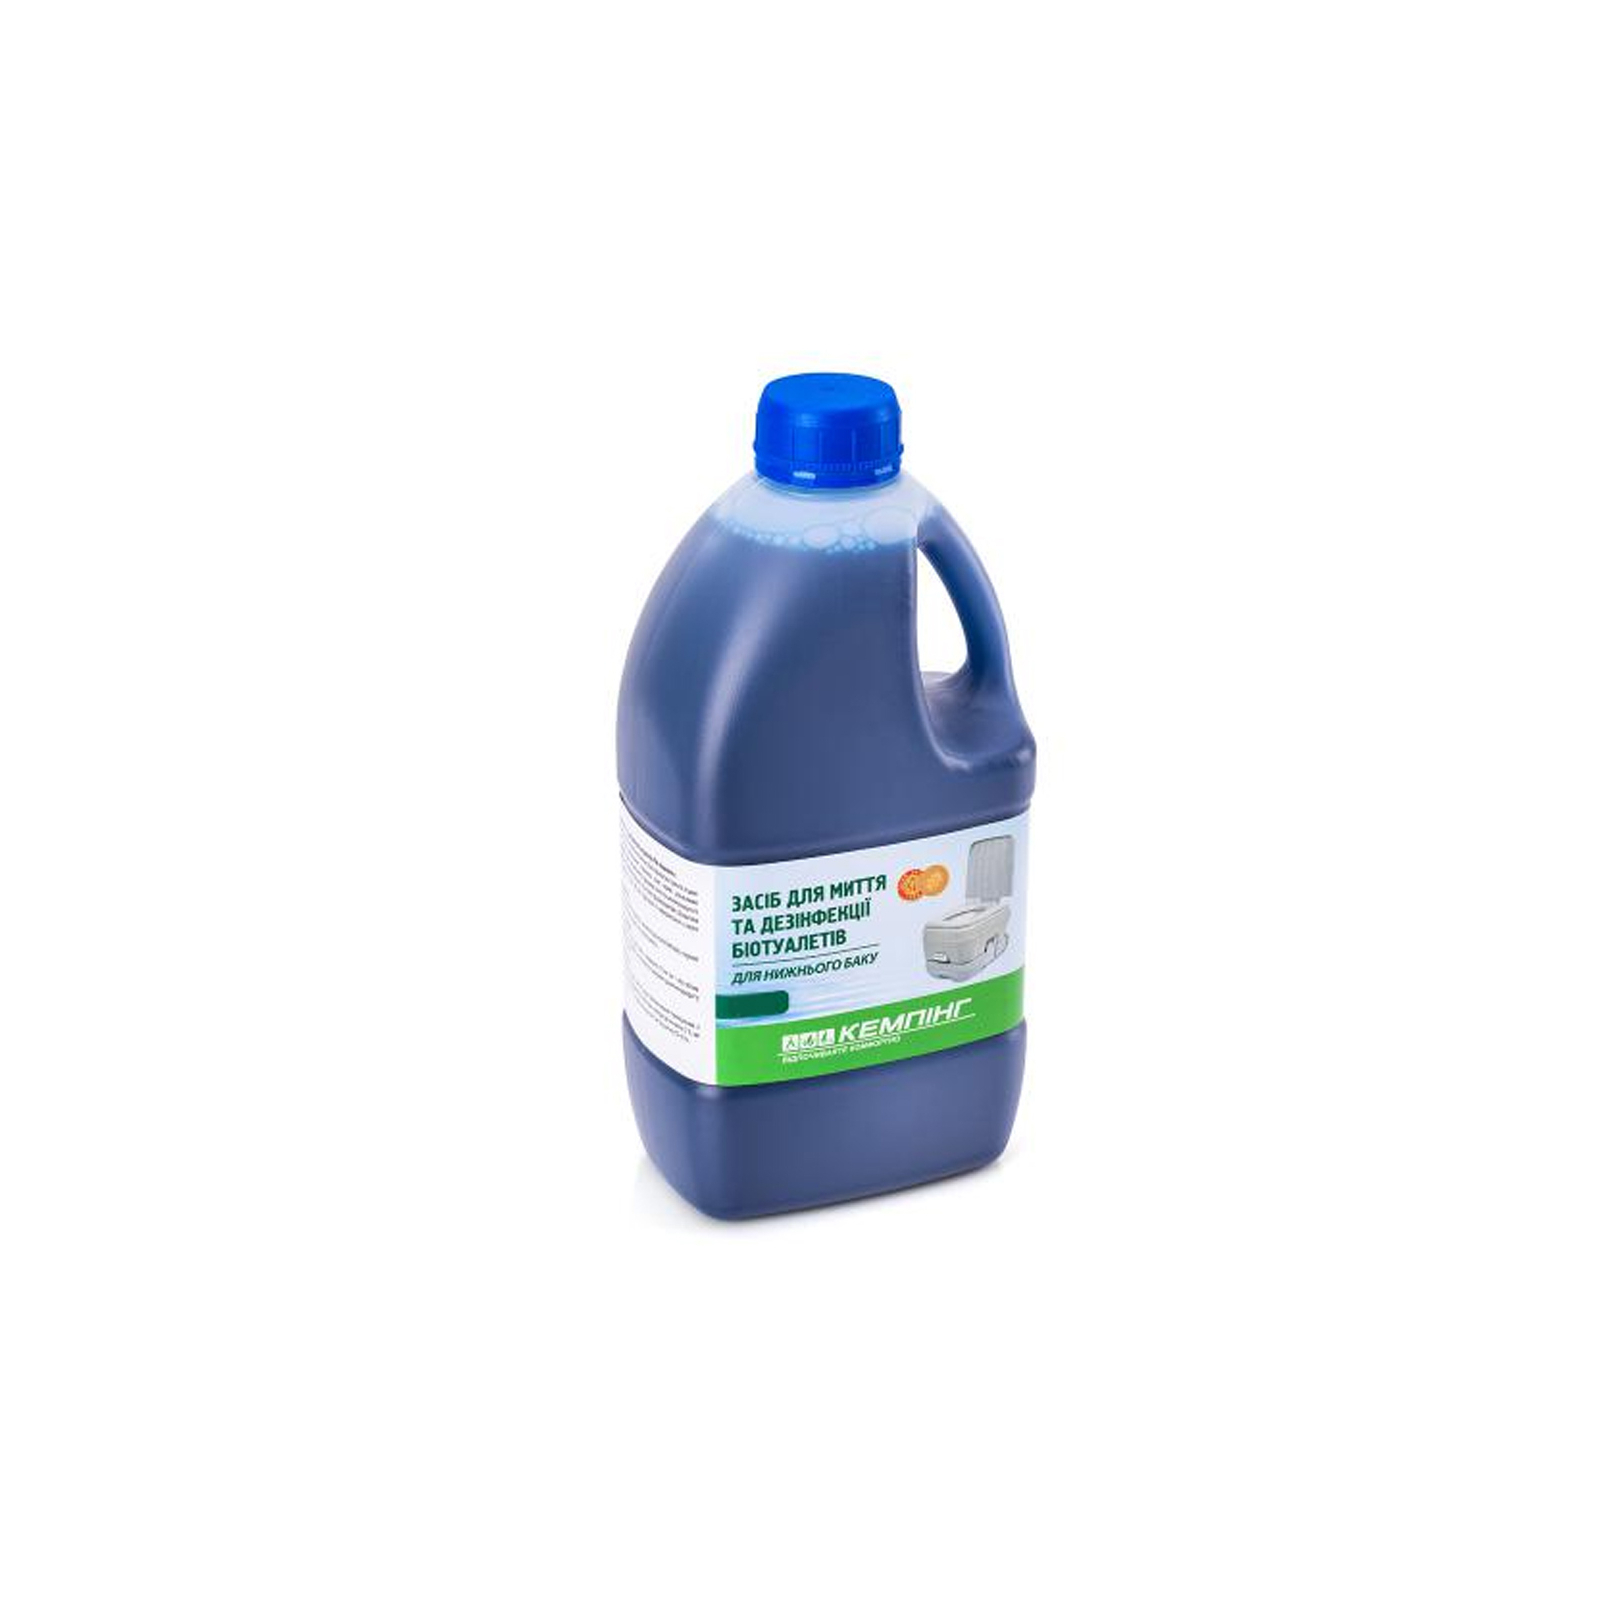 Средство для дезодорации биотуалетов Кемпінг для нижнего бака 1.6 л (4823082712090)